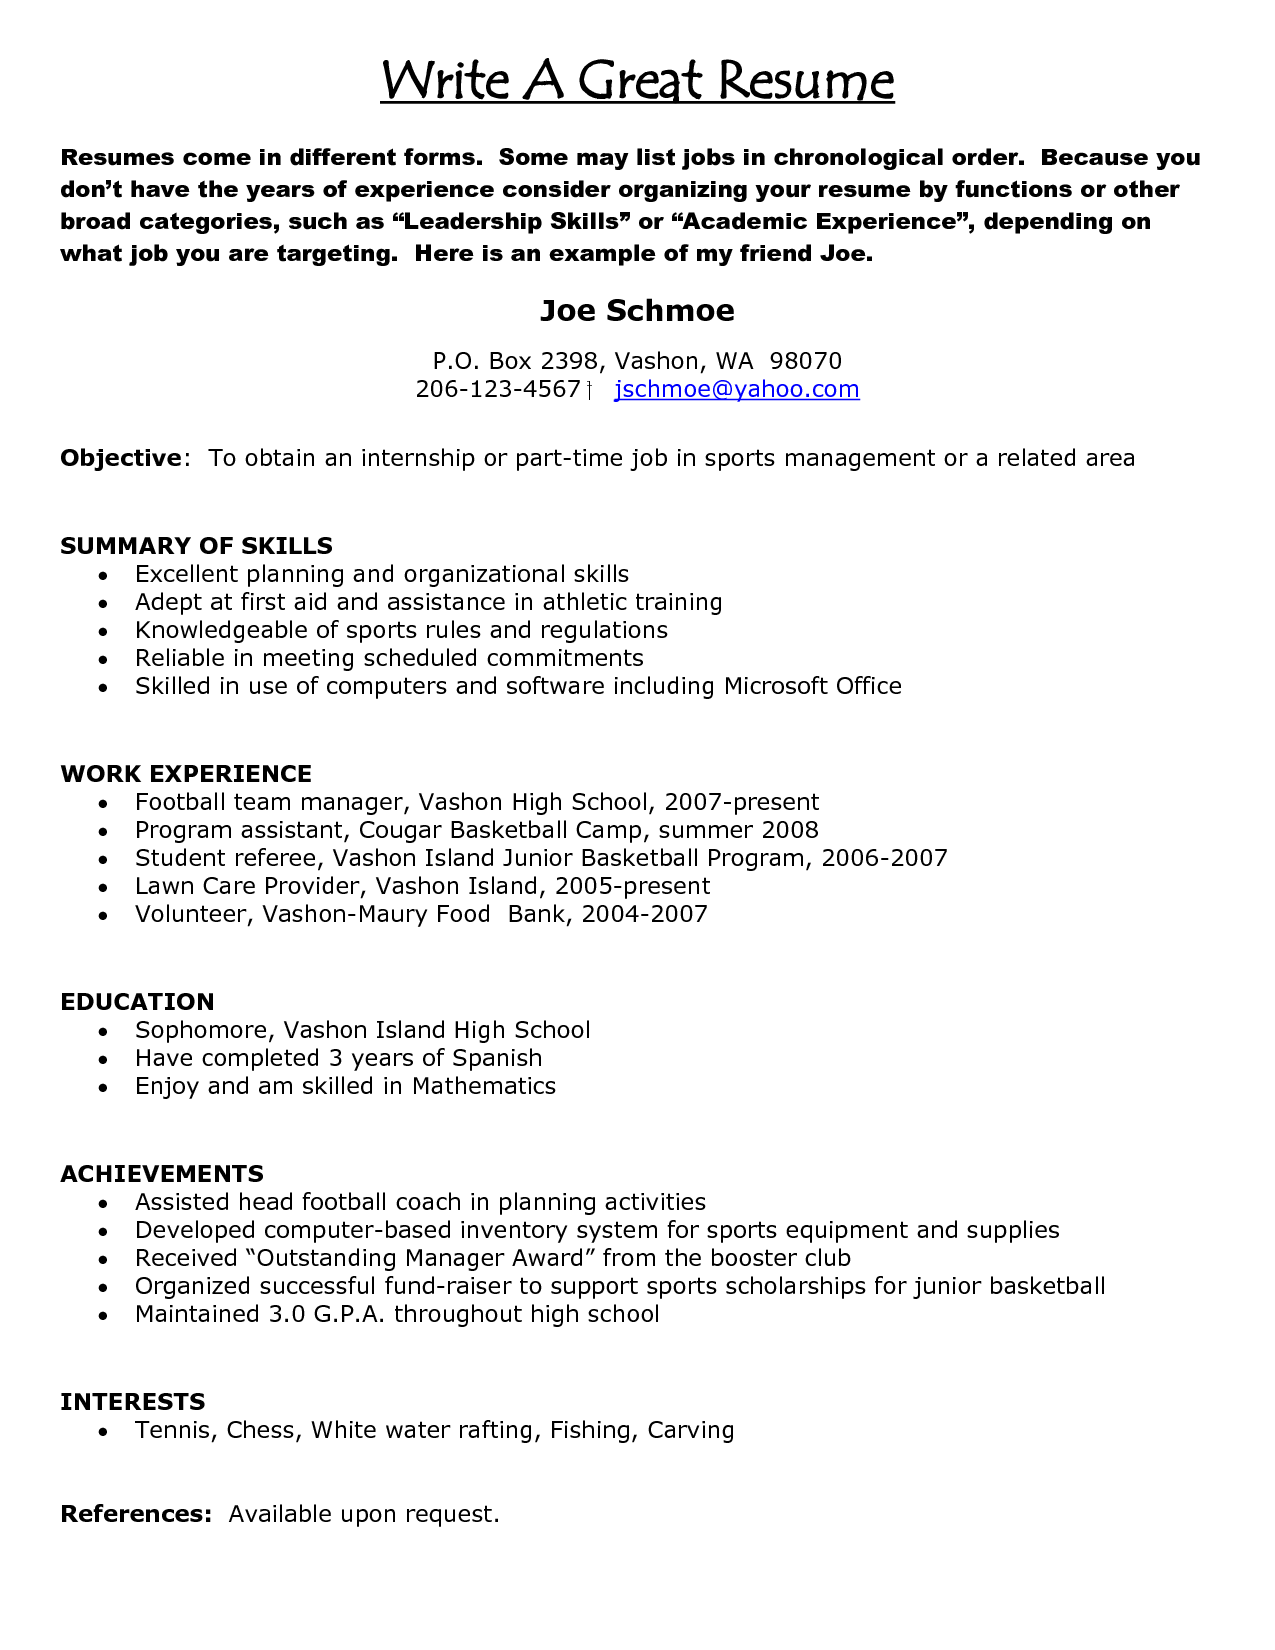 How To Write A Good Resume How To Write A Good Resume How To Write A Strong Resume Best How To Write A Resume how to write a good resume|wikiresume.com